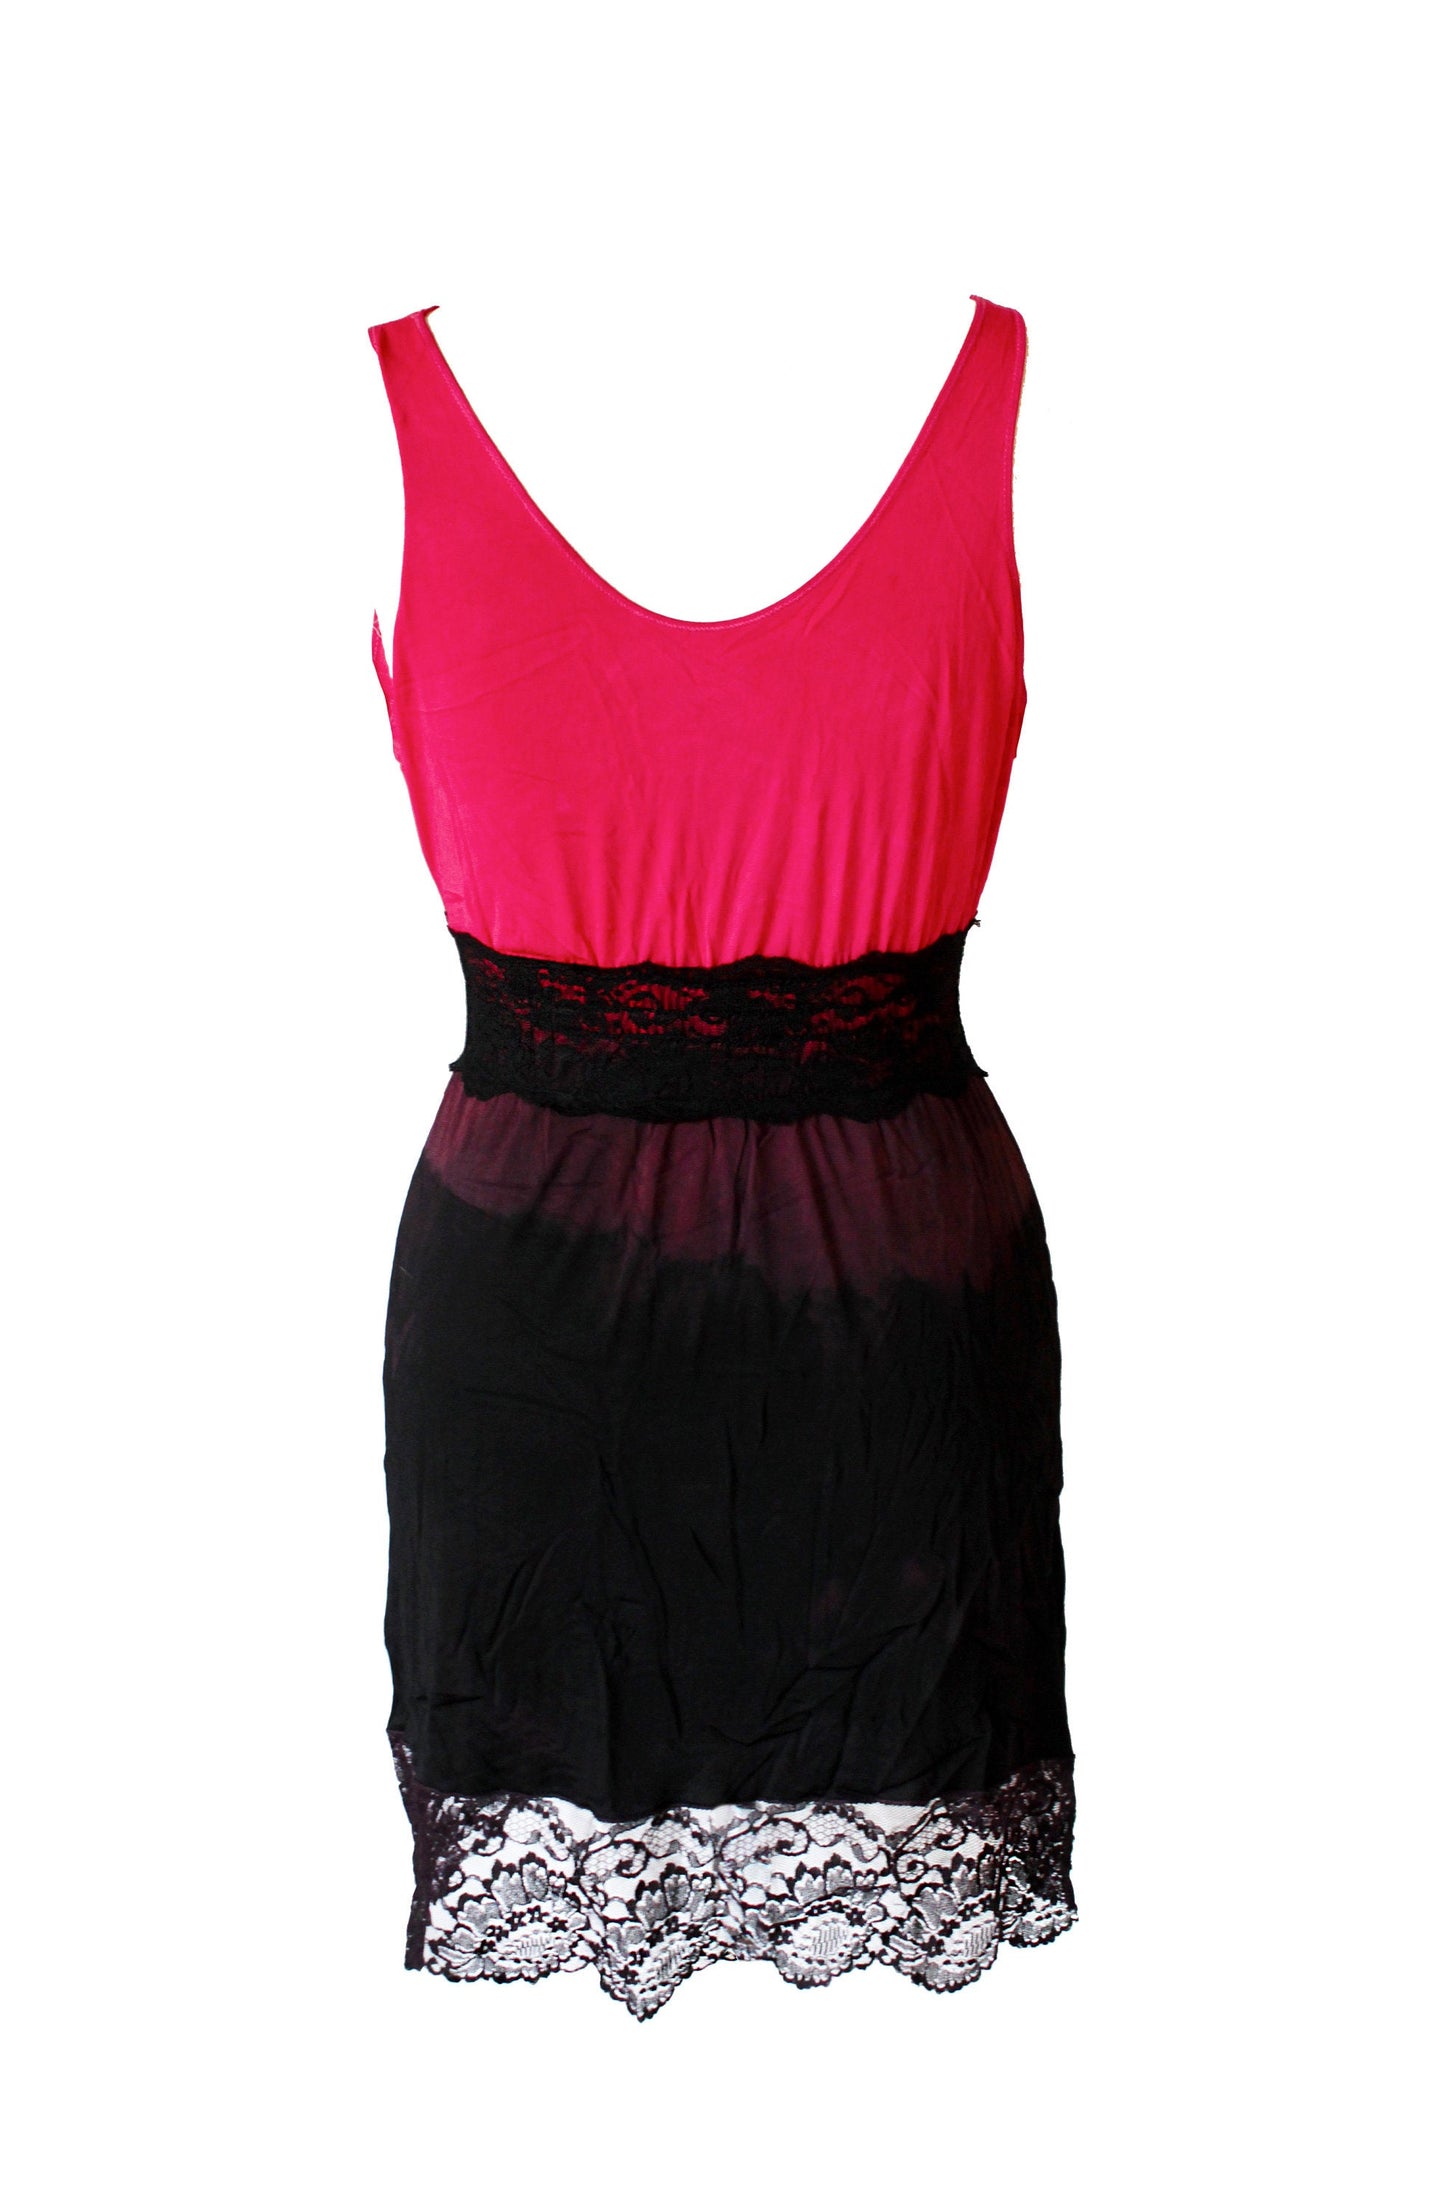 Ombre red & black tie dye slip lace fairy dress